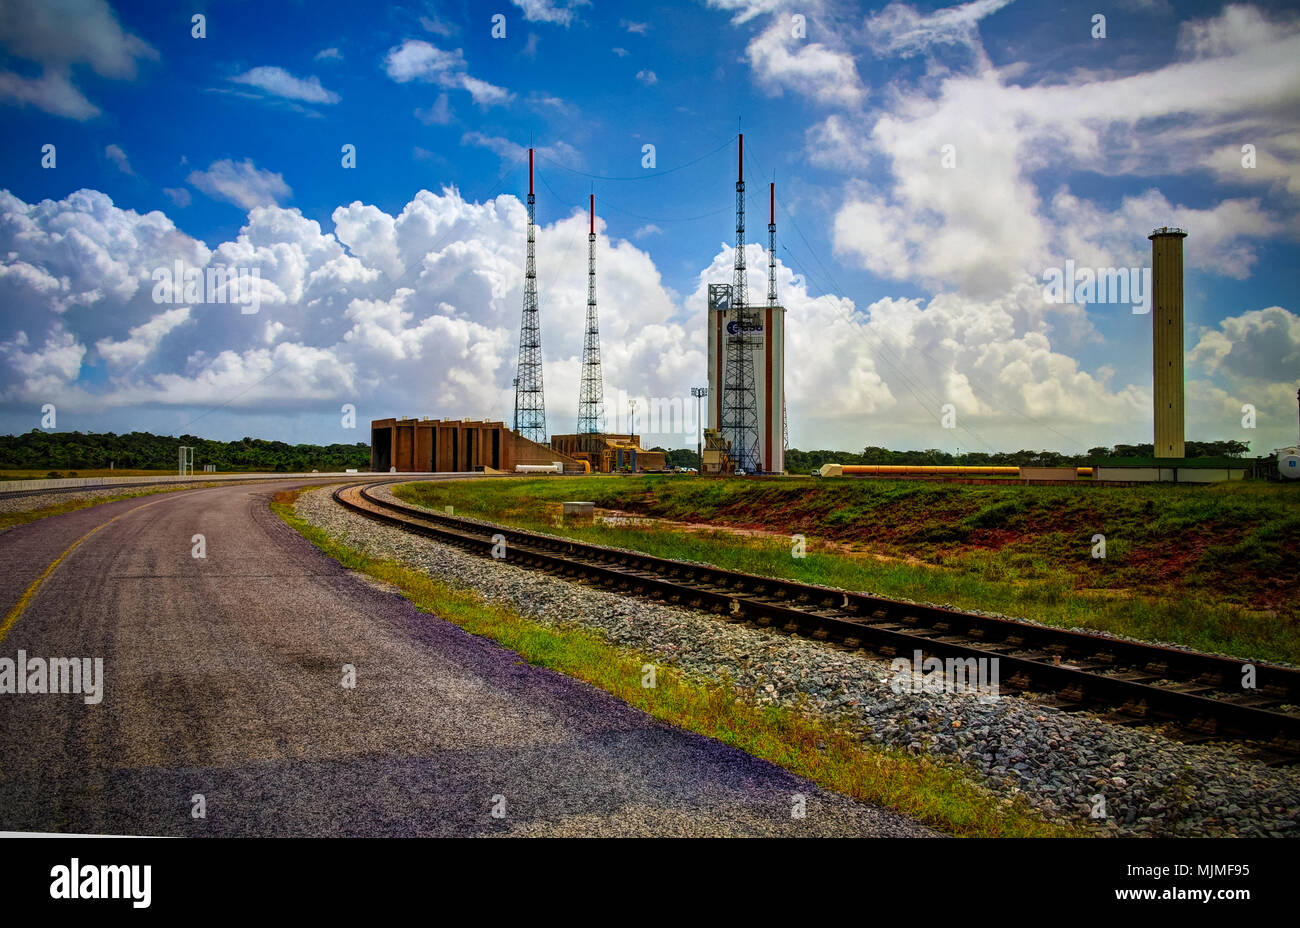 Lounchers inside Guiana Space Centre in Kourou, French Guiana Stock Photo